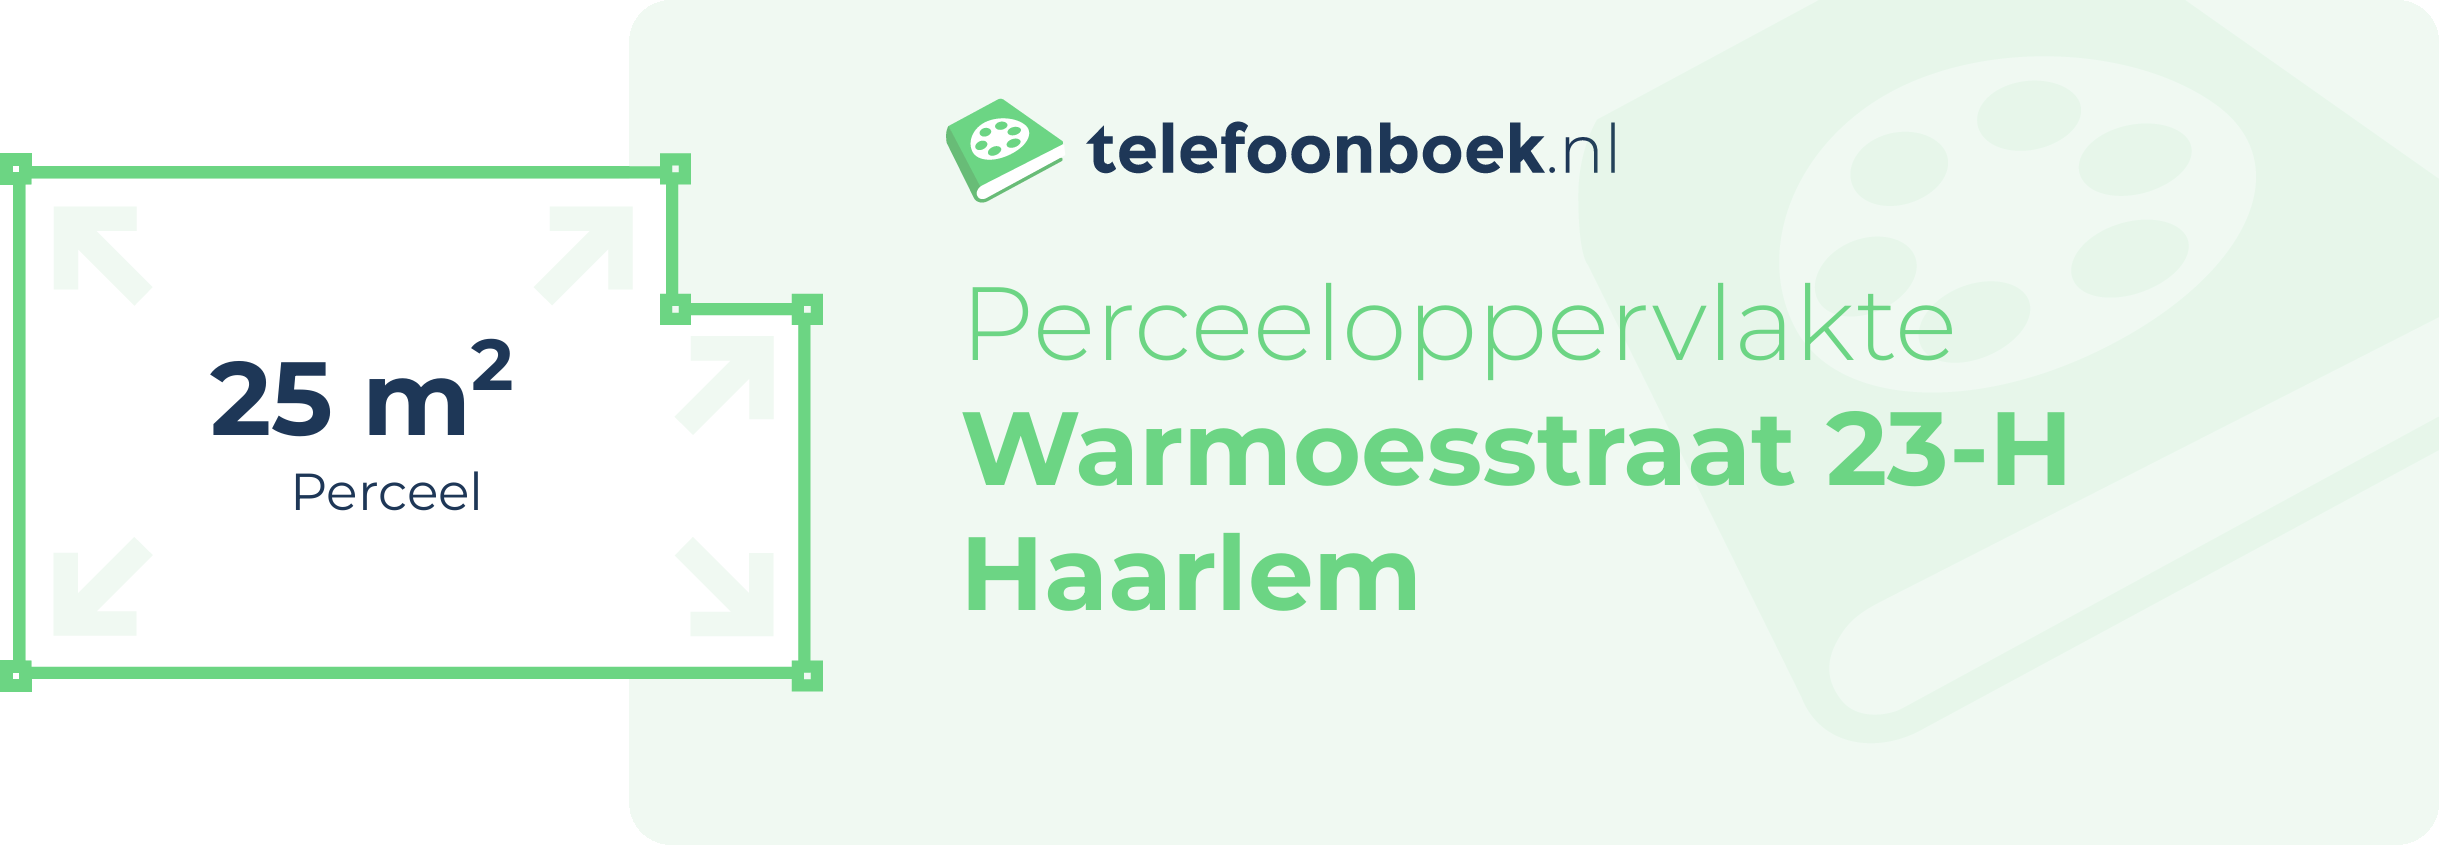 Perceeloppervlakte Warmoesstraat 23-H Haarlem